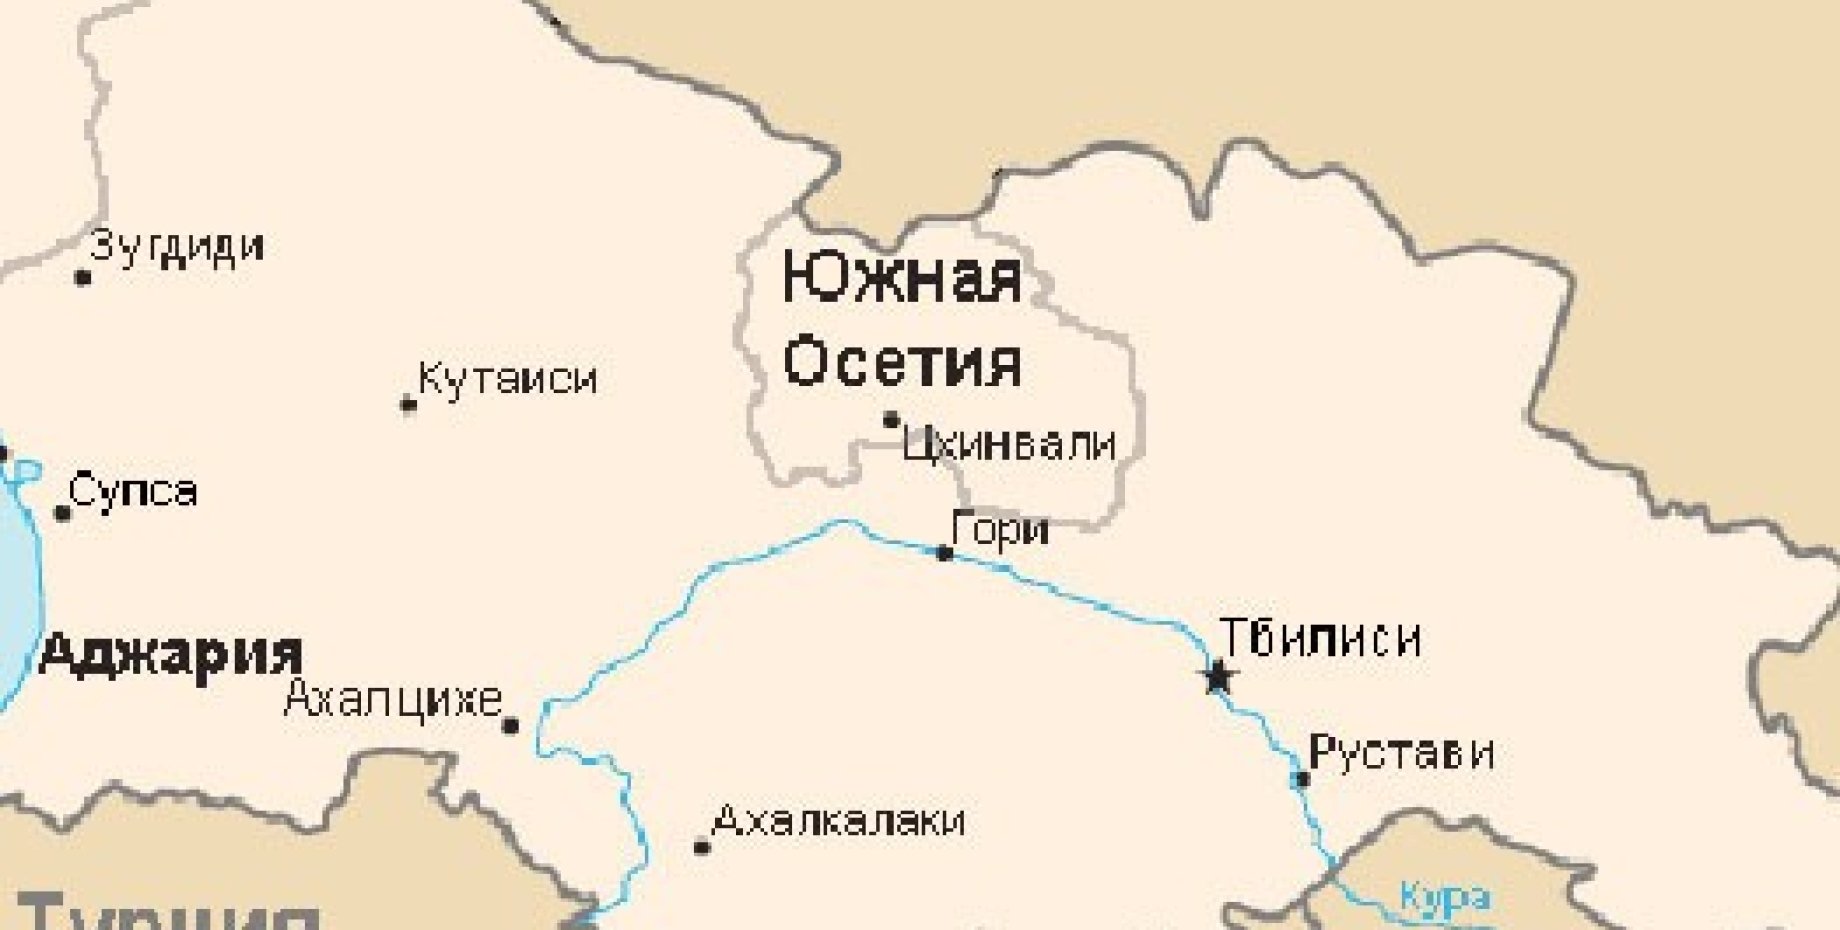 Показать на карте южную осетию. Южная Осетия на карте. Южная Осетия на карте Грузии. Южная Осетия политическая карта. Карта Грузии и Абхазии и Южной Осетии.